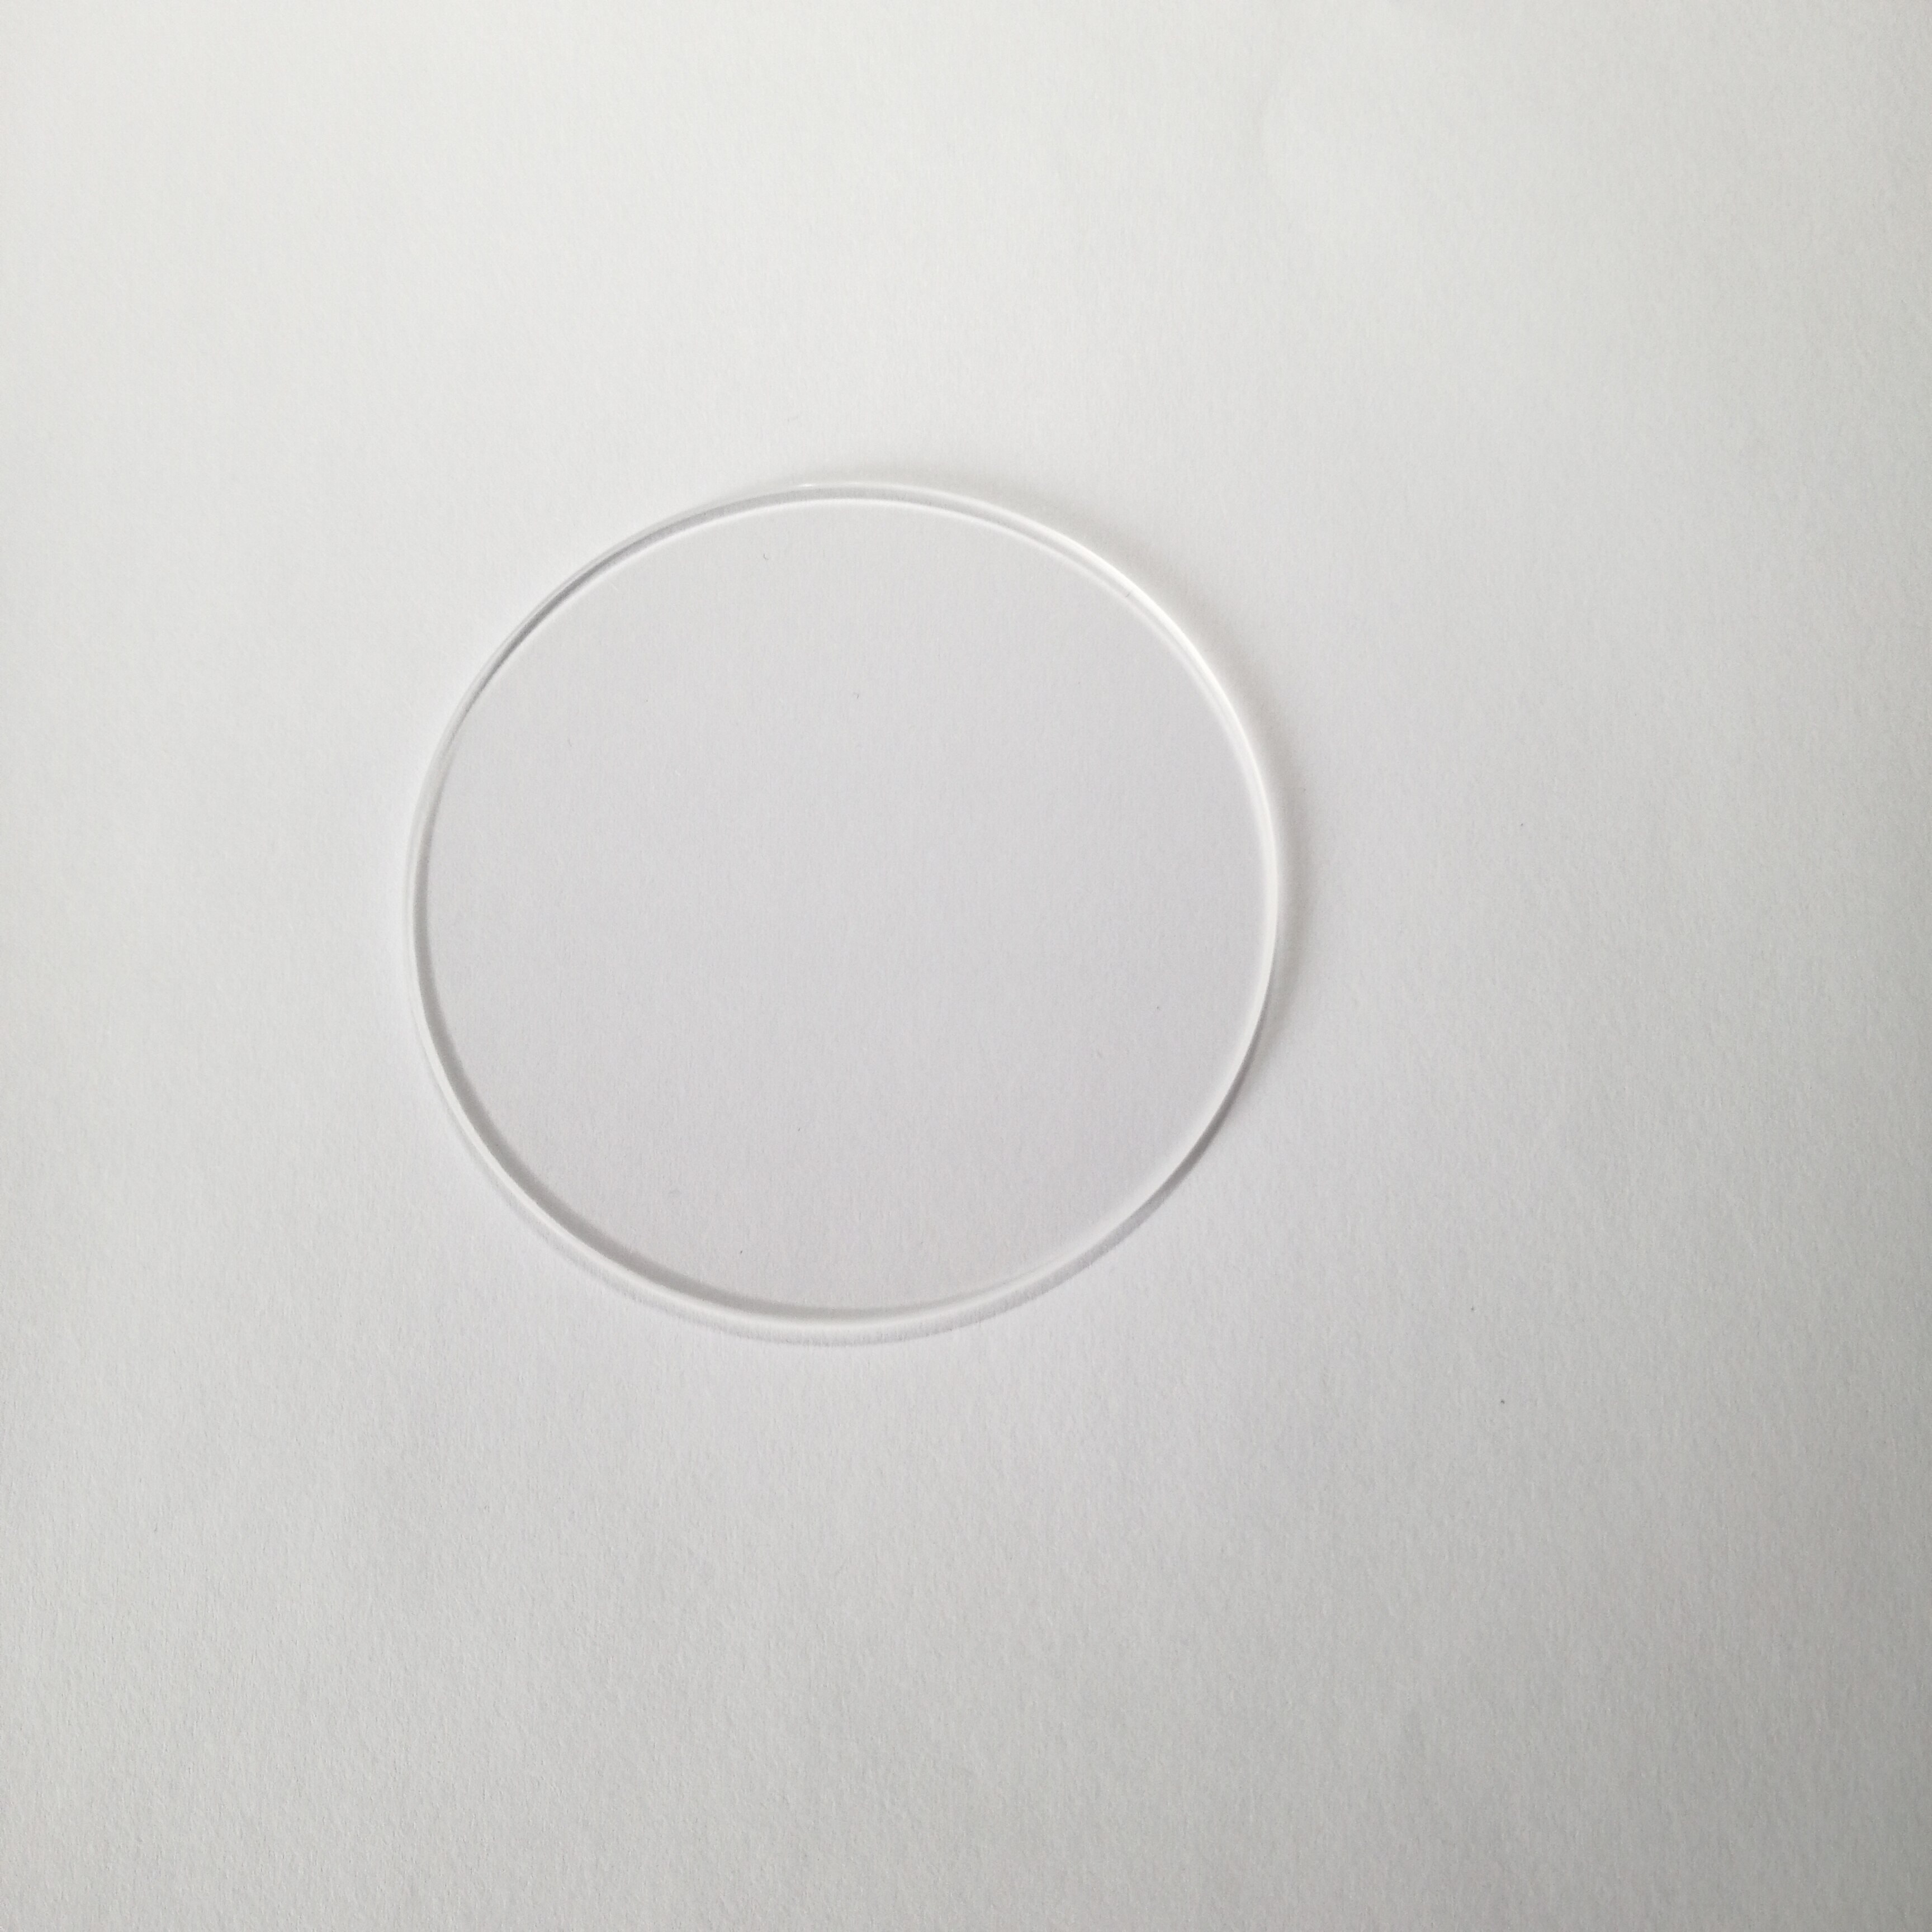 Jgs 1 75*2.0mm smeltet silica vindue kvartsglas disk polering plade